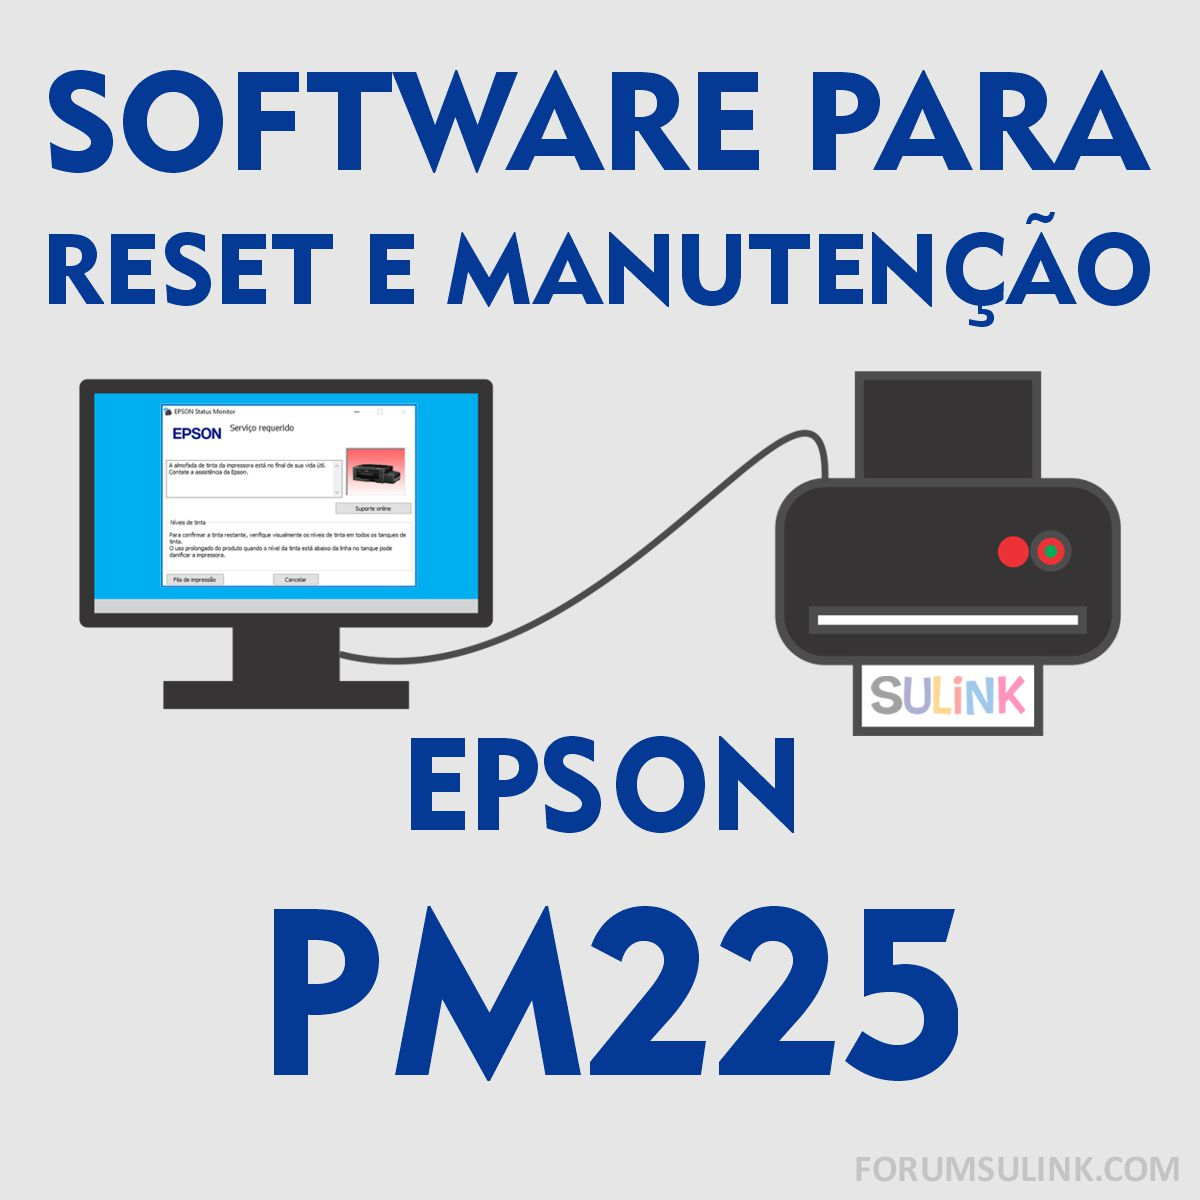 Epson PM225 | Software para Reset das Almofadas e Manutençãos